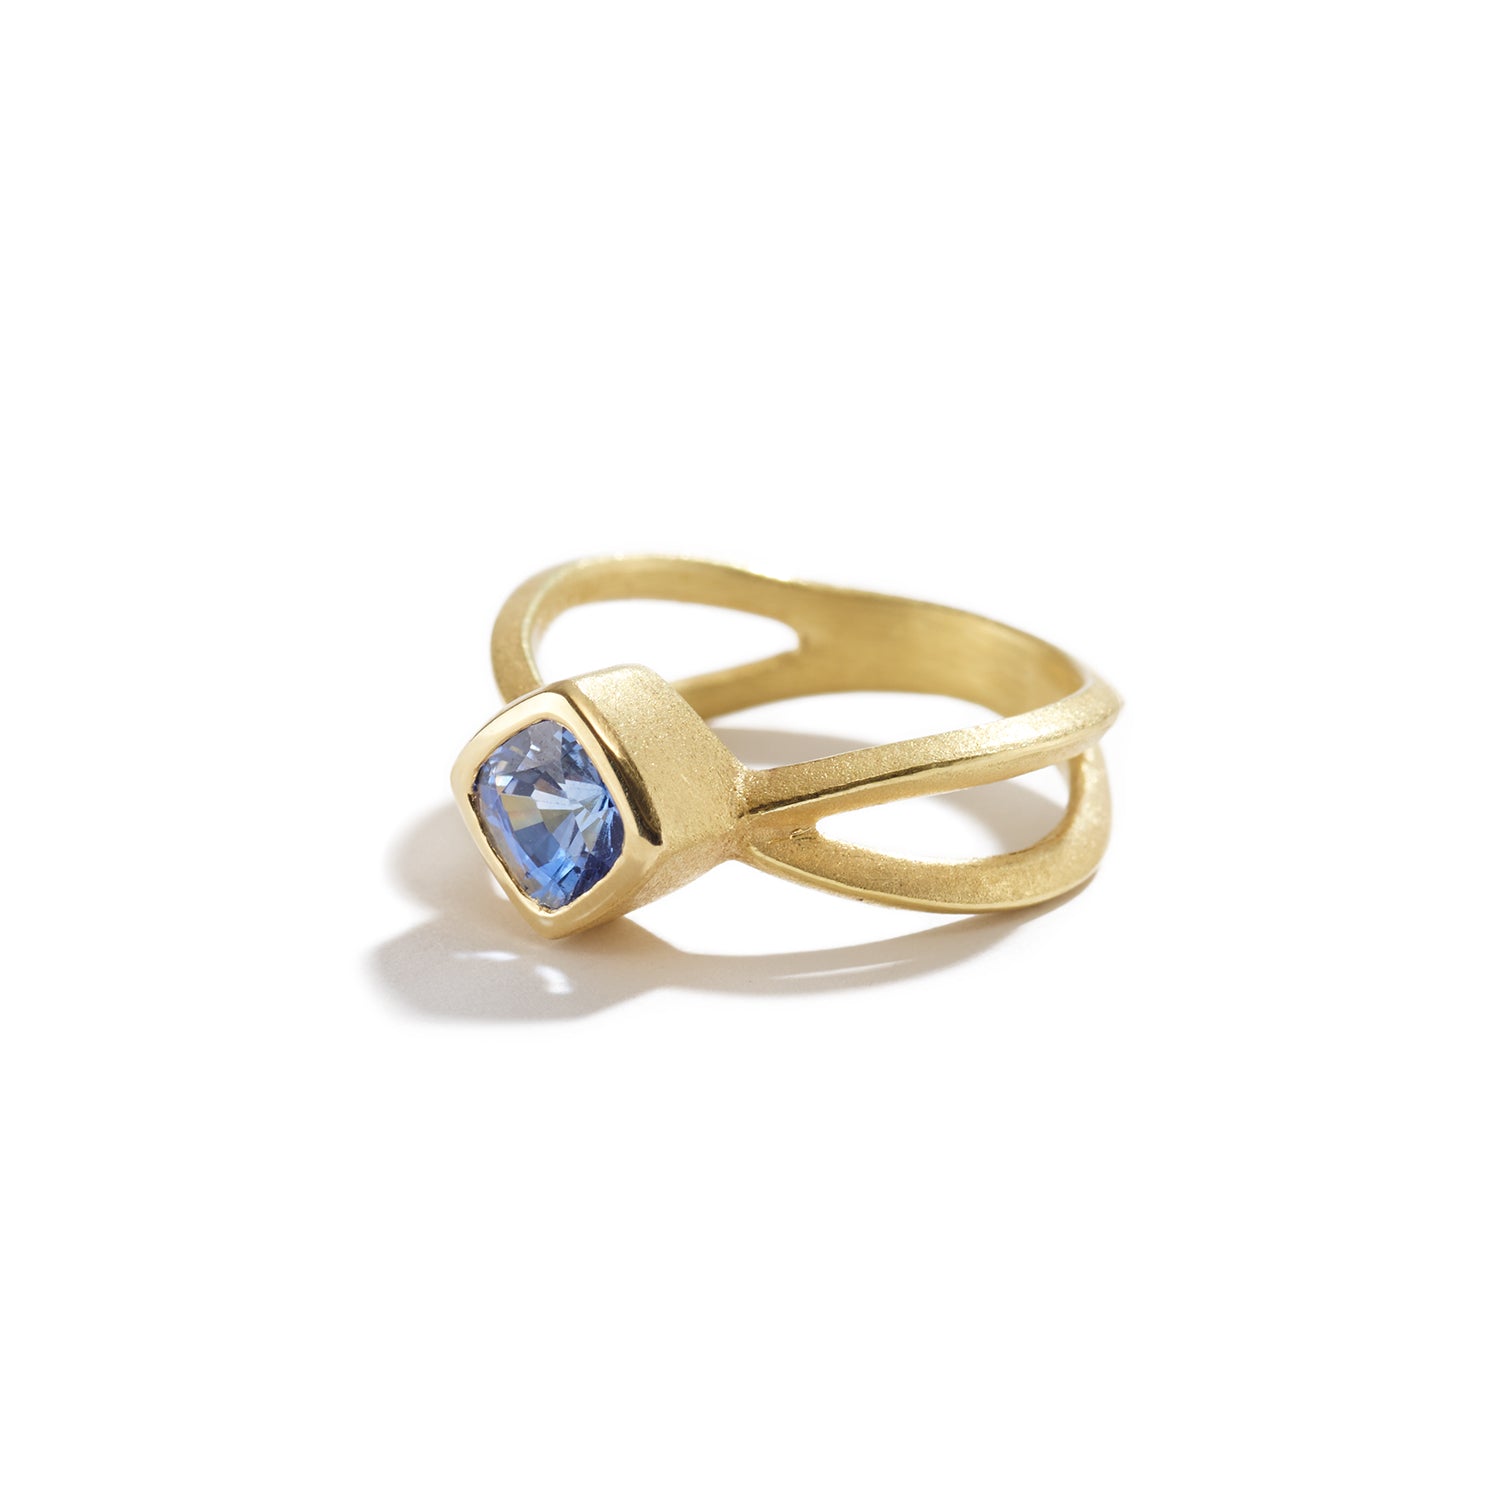 Cushion Blue Sapphire Ring